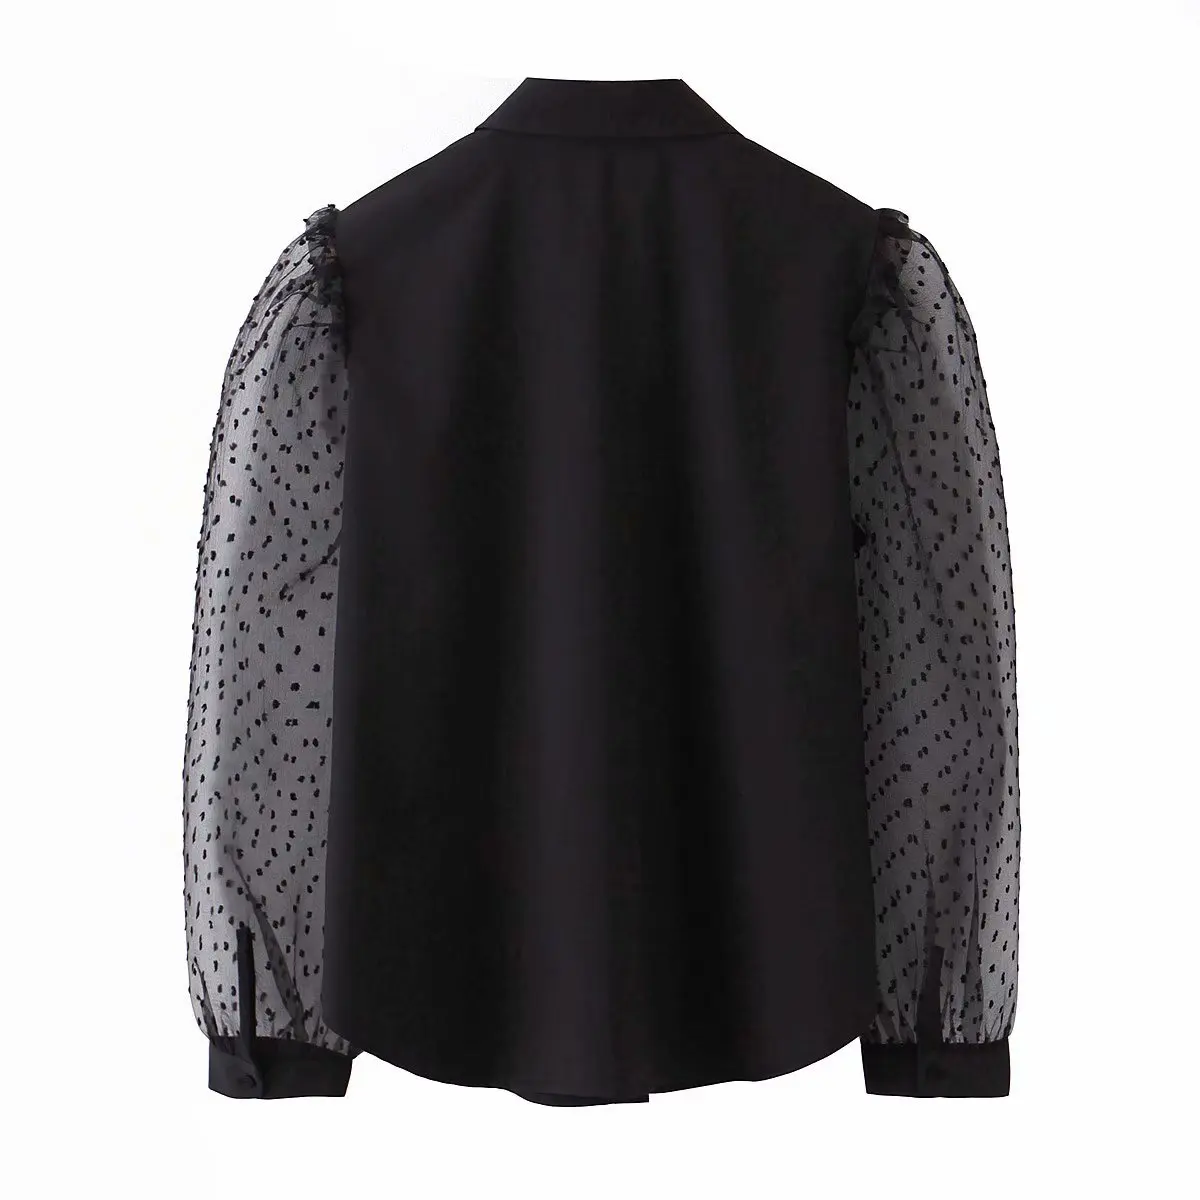 Блузка женская черная сетчатая Лоскутная блуза с отложным воротником прозрачная рубашка с длинным рукавом Женские топы и блузки ropa mujer